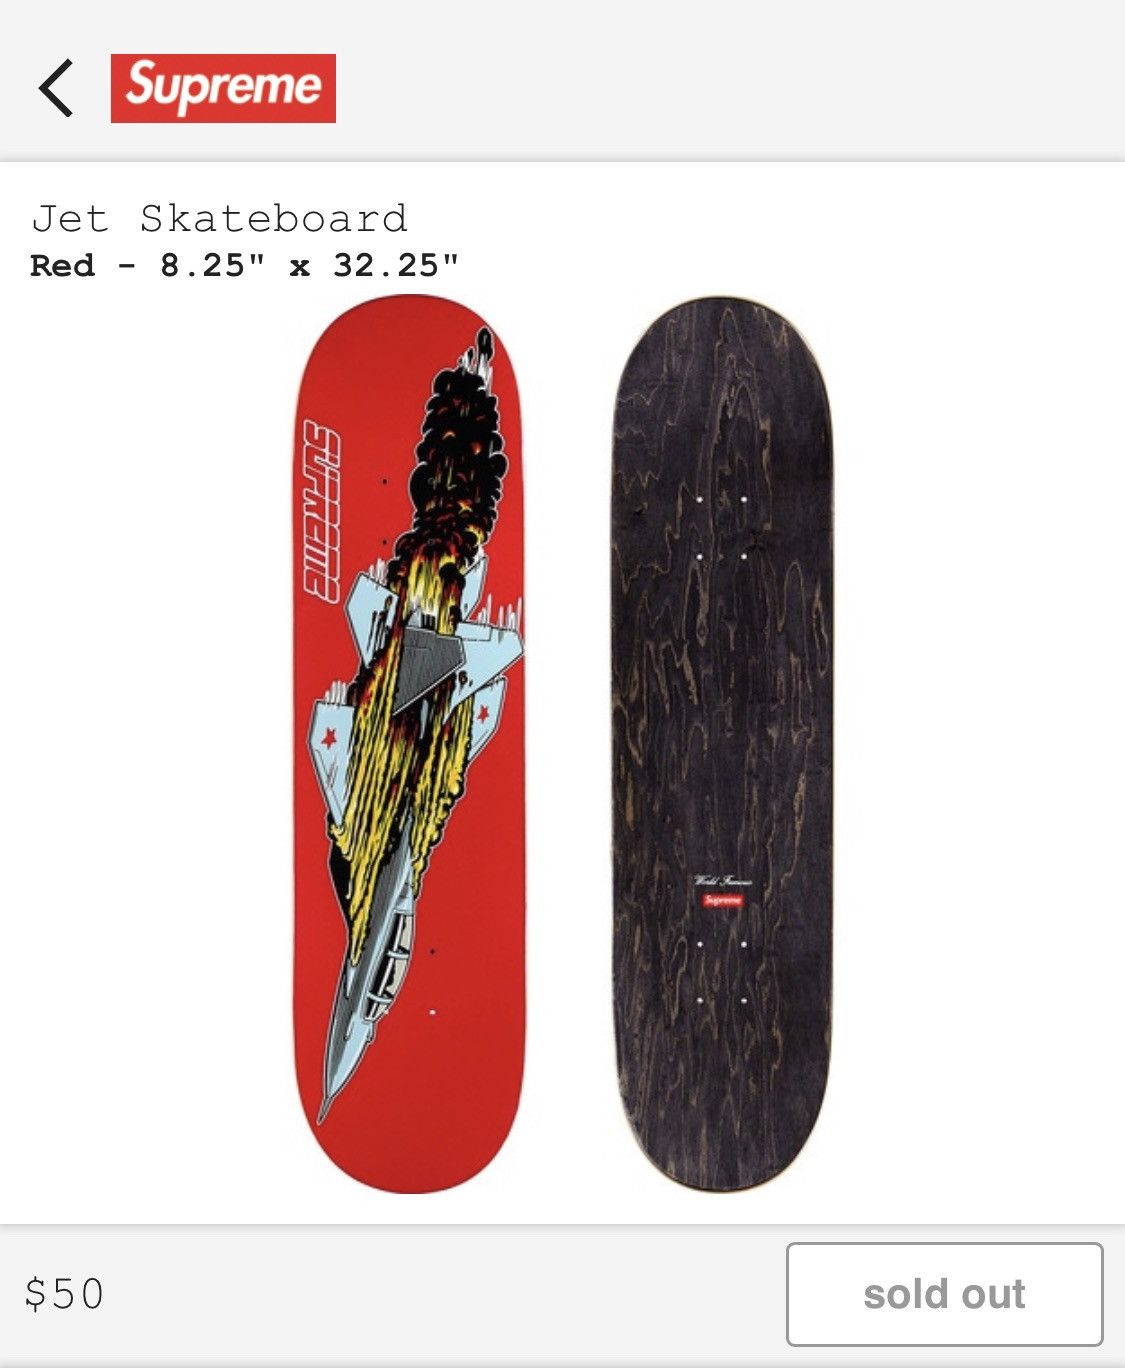 Supreme Jet Skateboard Deck Red